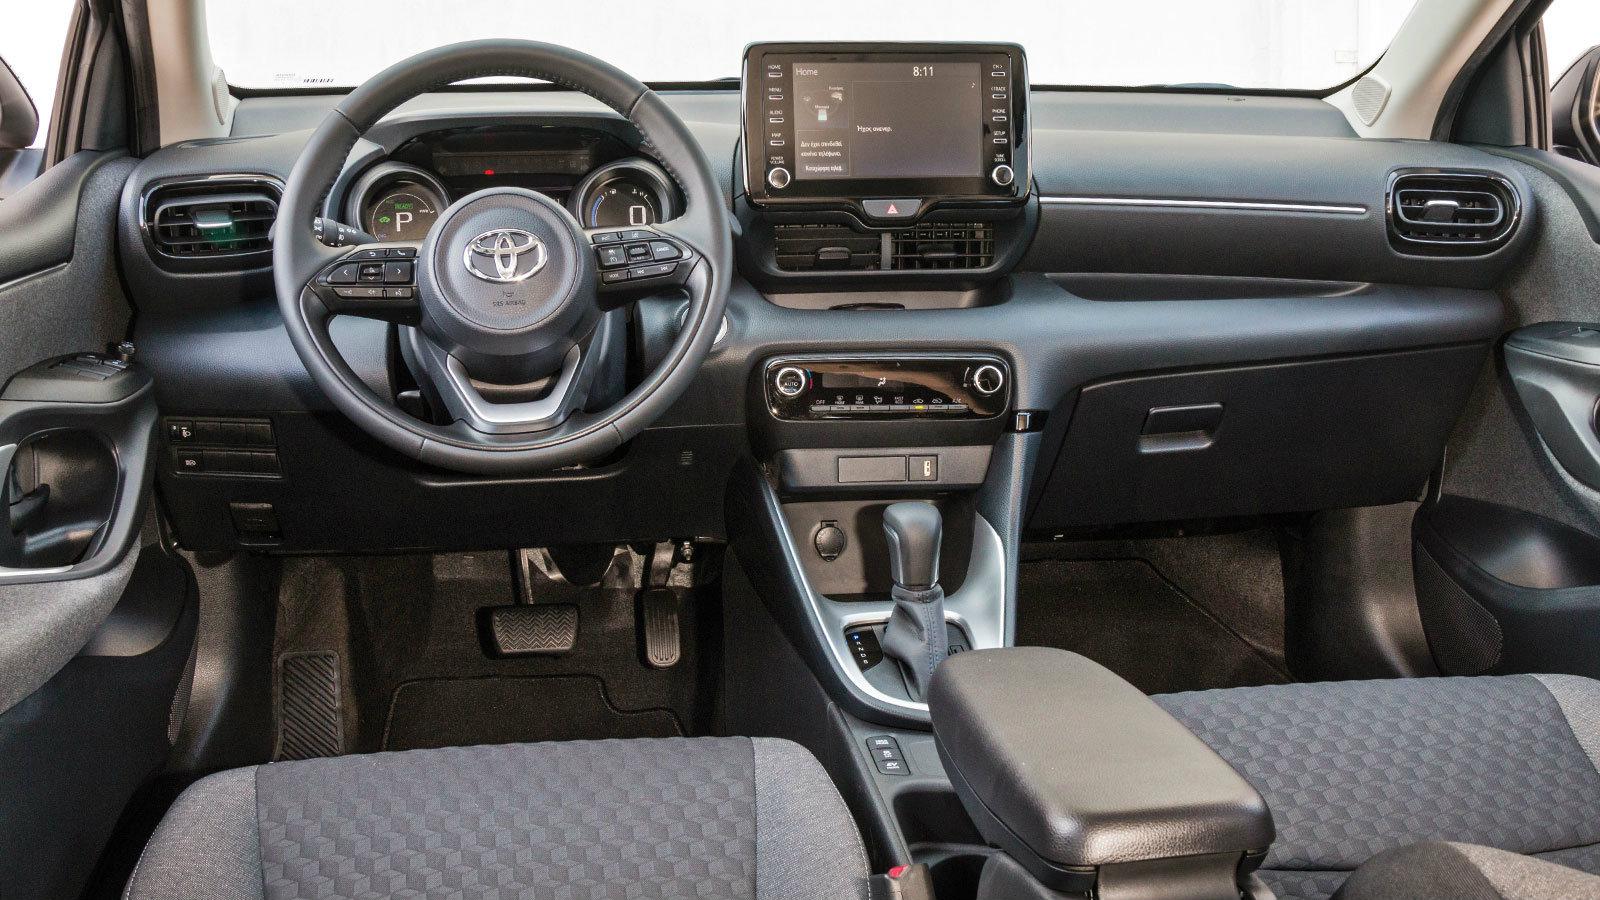 Τα χαρακτηριστικά του νέου Toyota Yaris Hybrid